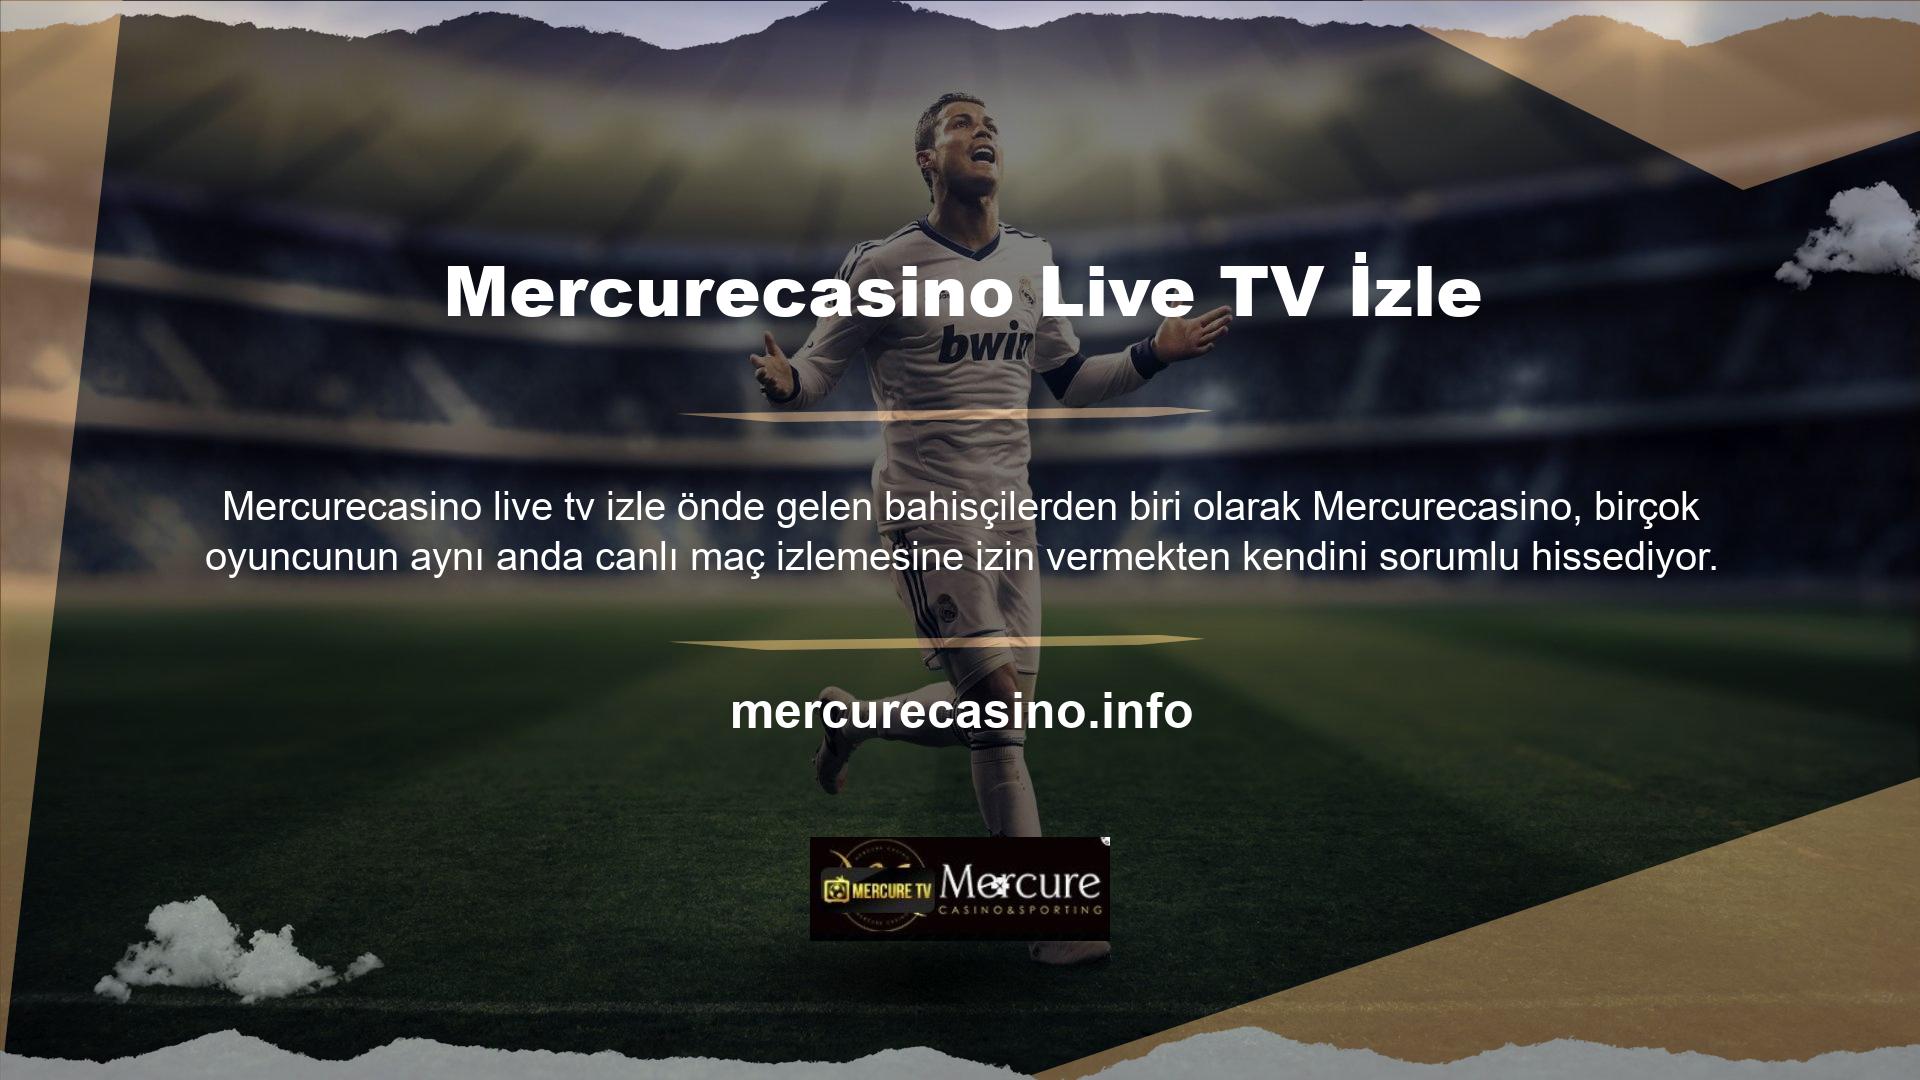 Bu nedenle bu web sitesi, Mercurecasino TV hizmetini kullanmak isteyen herkes için ilk irtibat noktasıdır